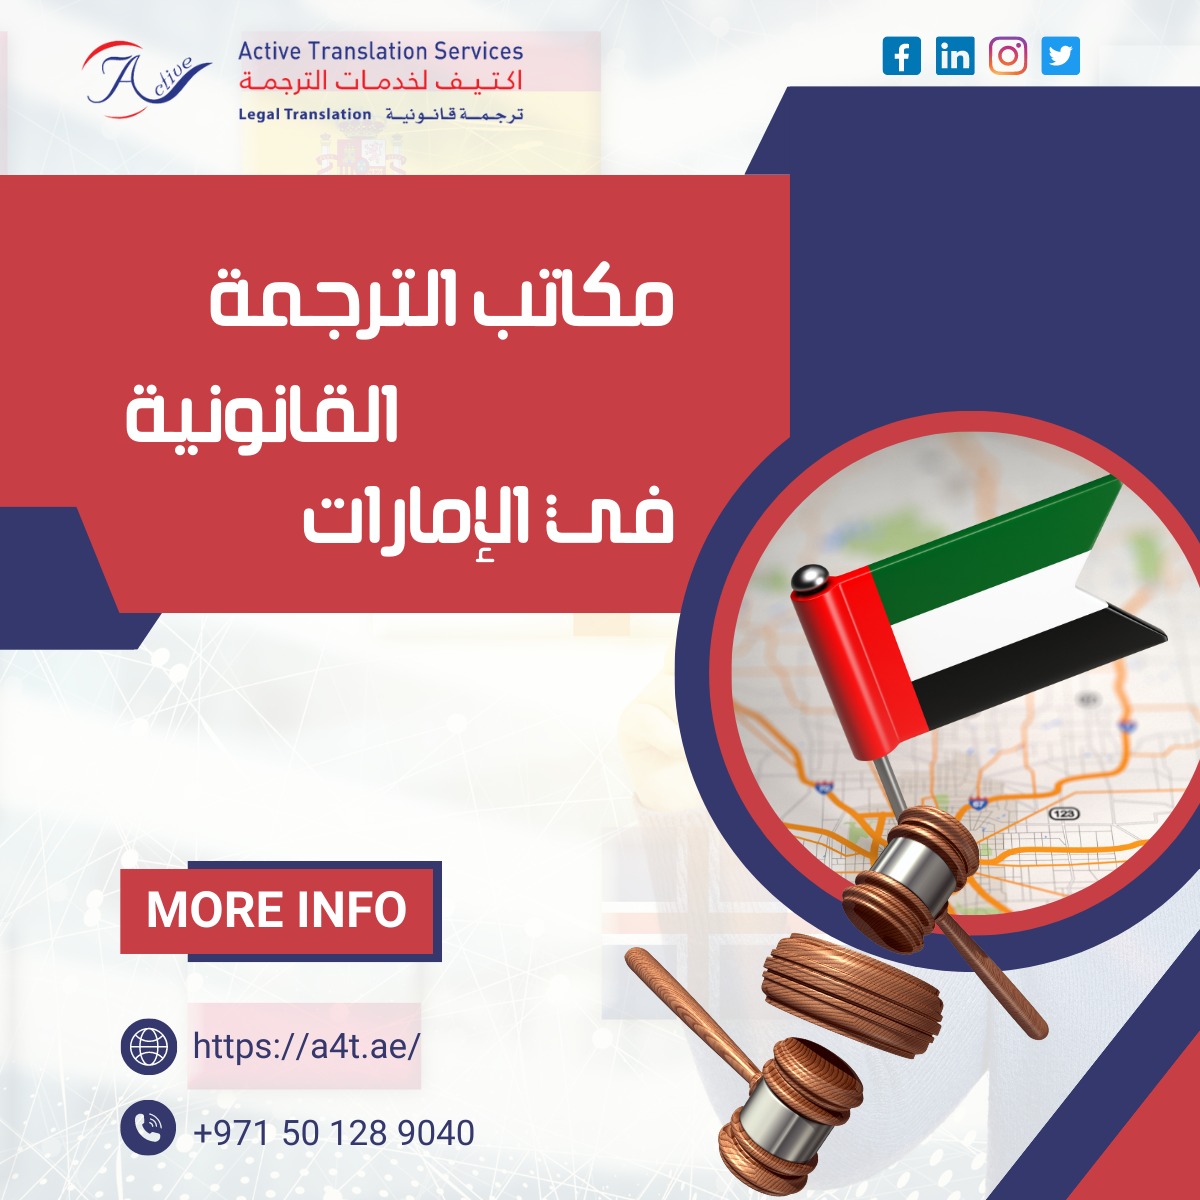 الترجمة القانونية في الإمارات